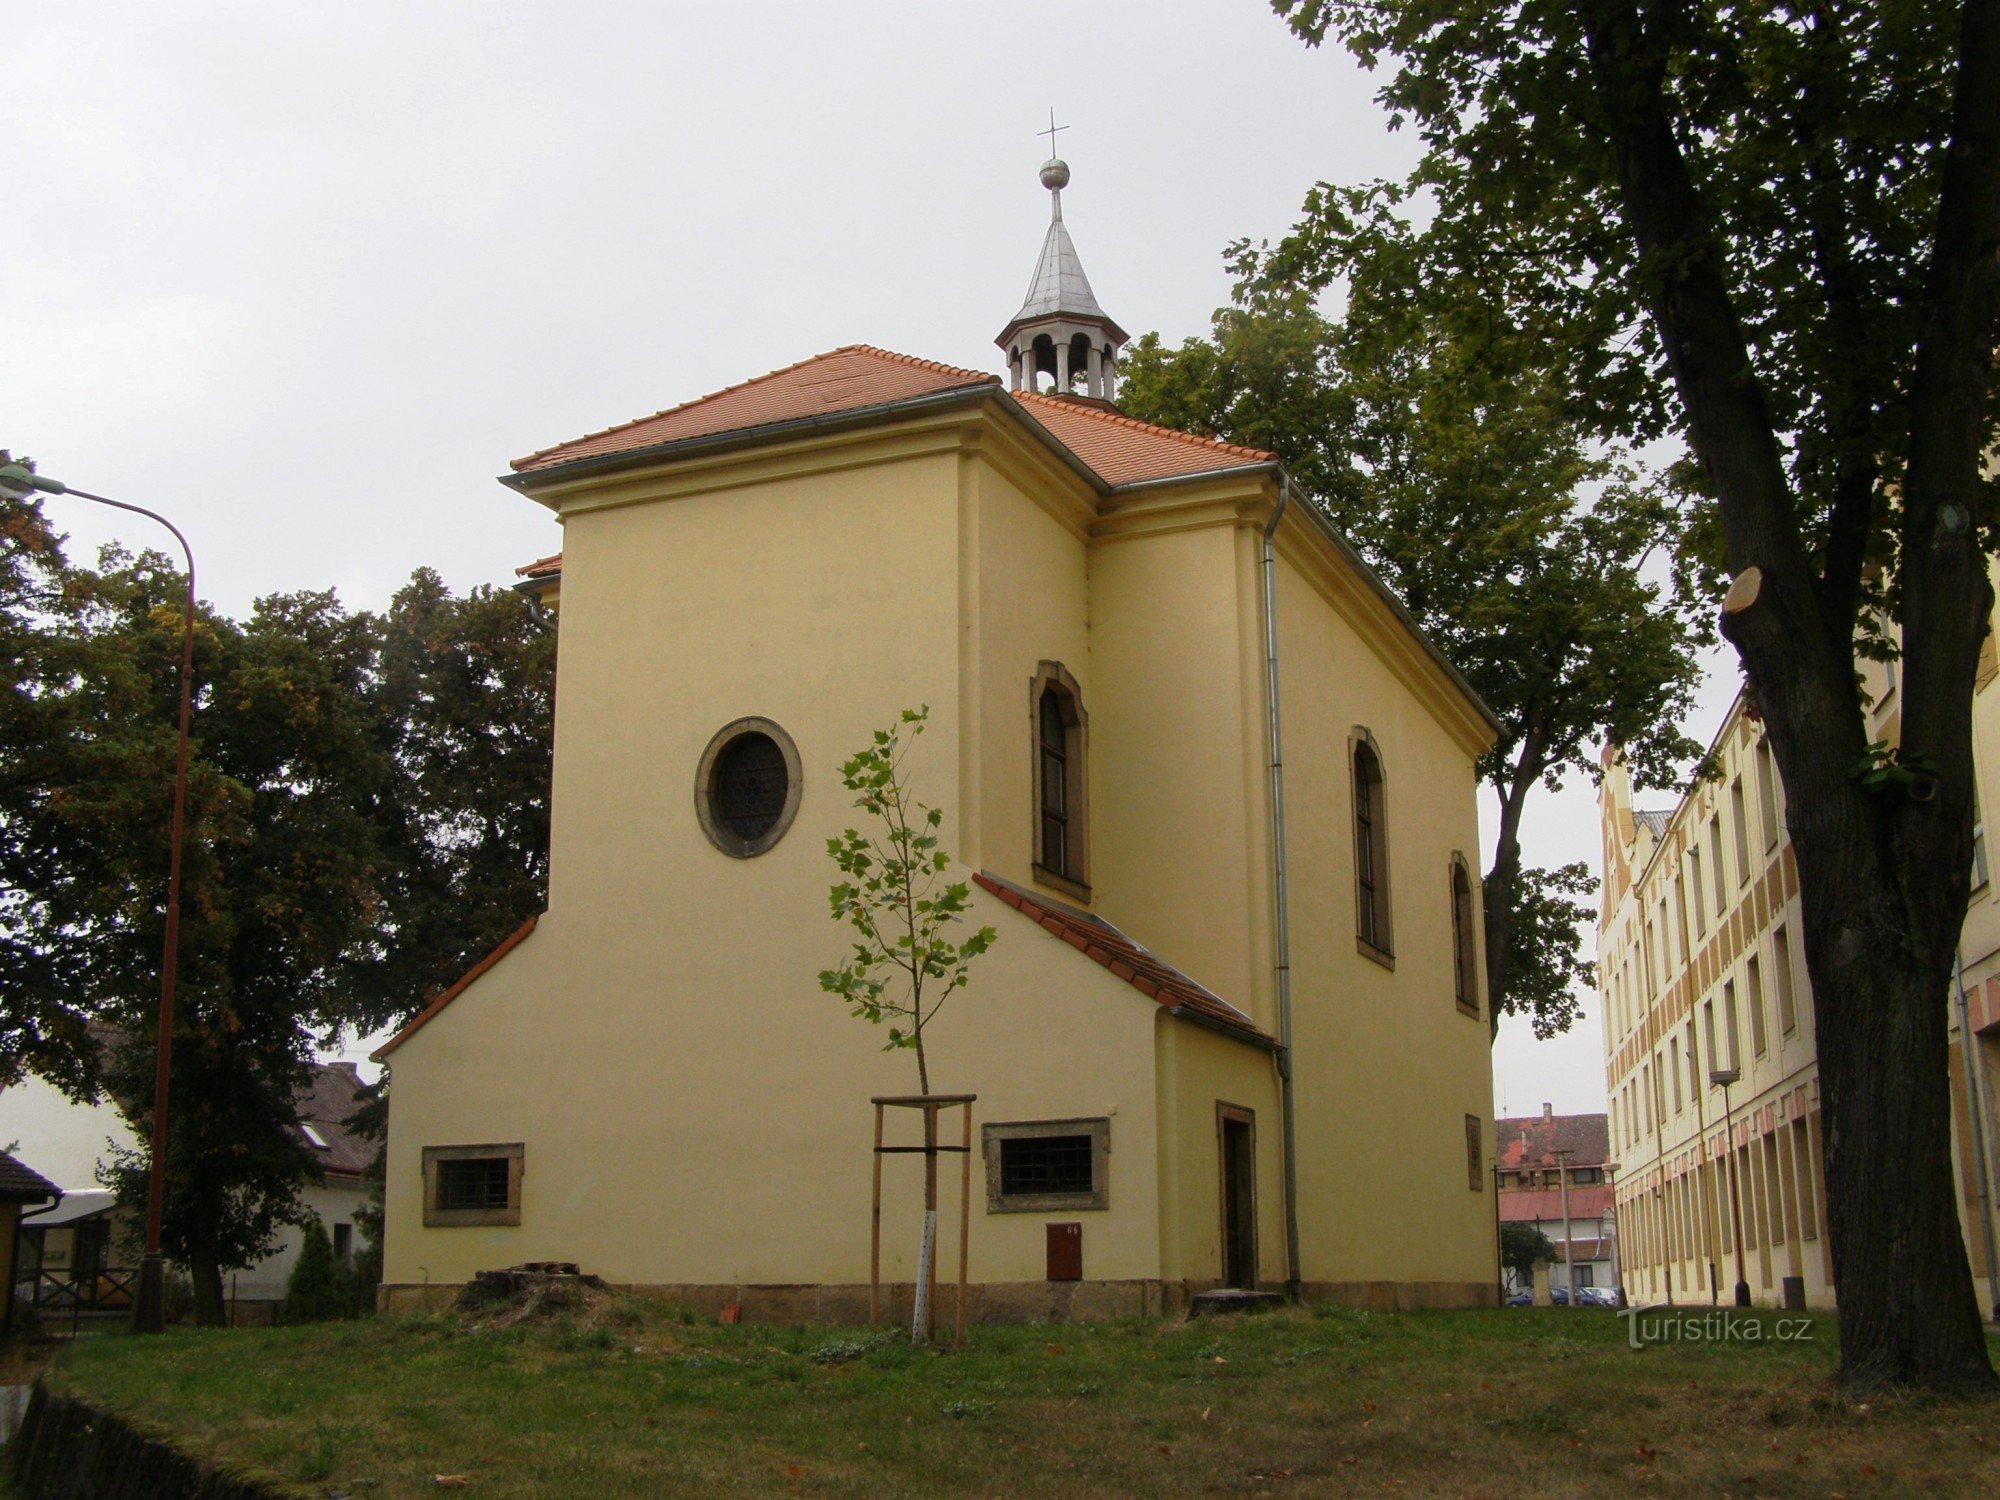 Skrivany - iglesia de St. Ana